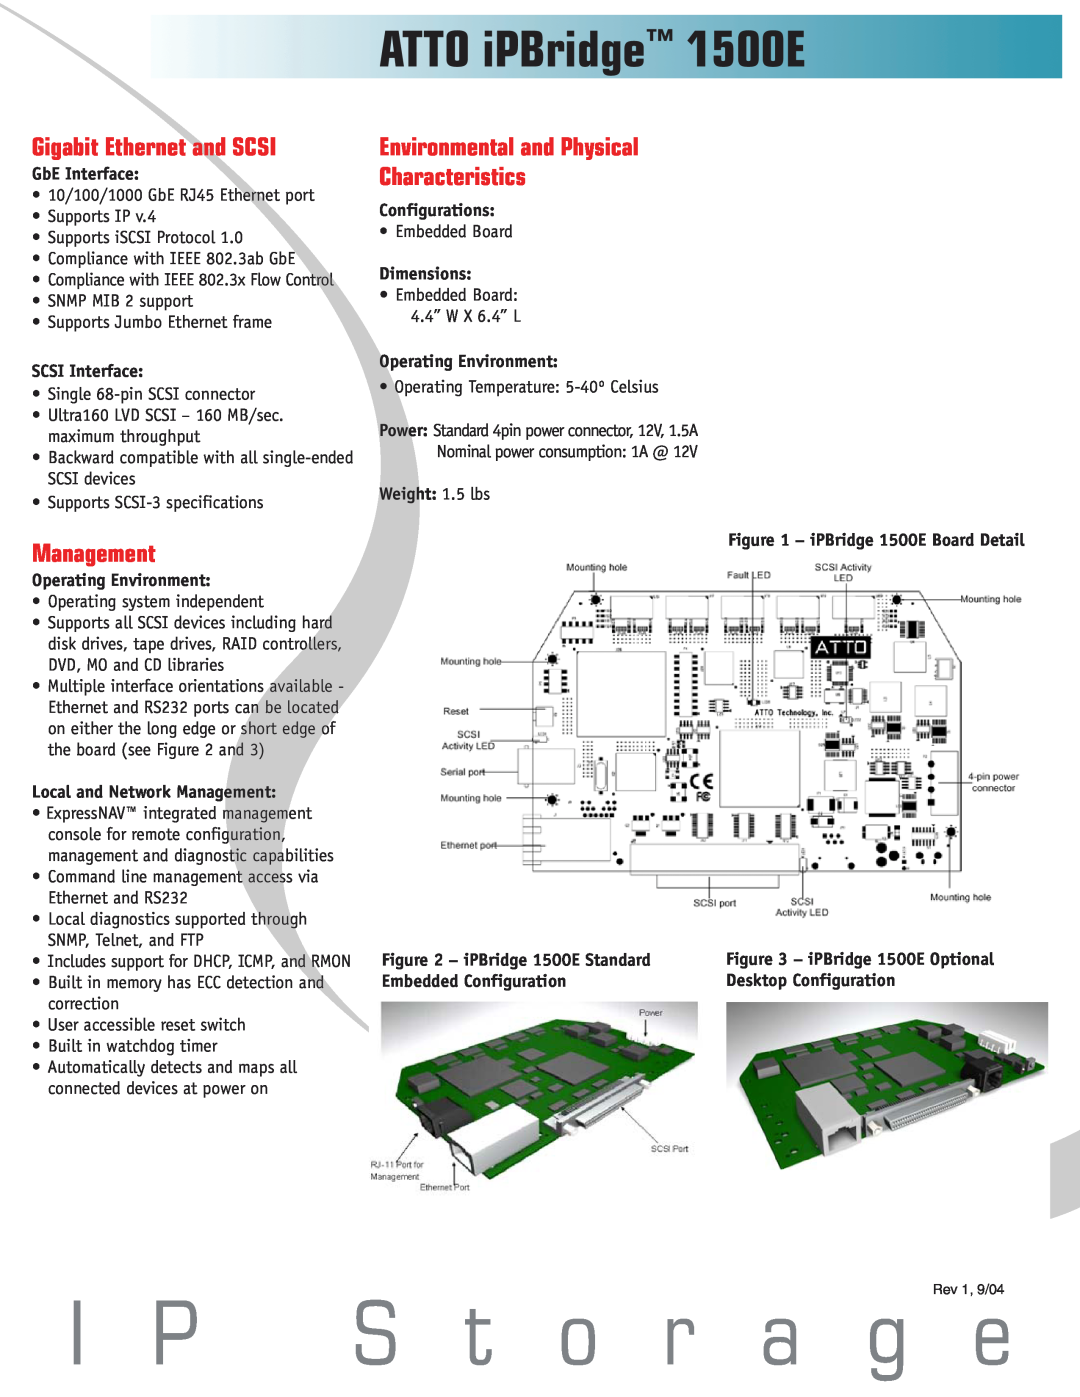 ATTO Technology manual I P S t o r a g e, ATTO iPBridge 1500E, Gigabit Ethernet and SCSI, Management 